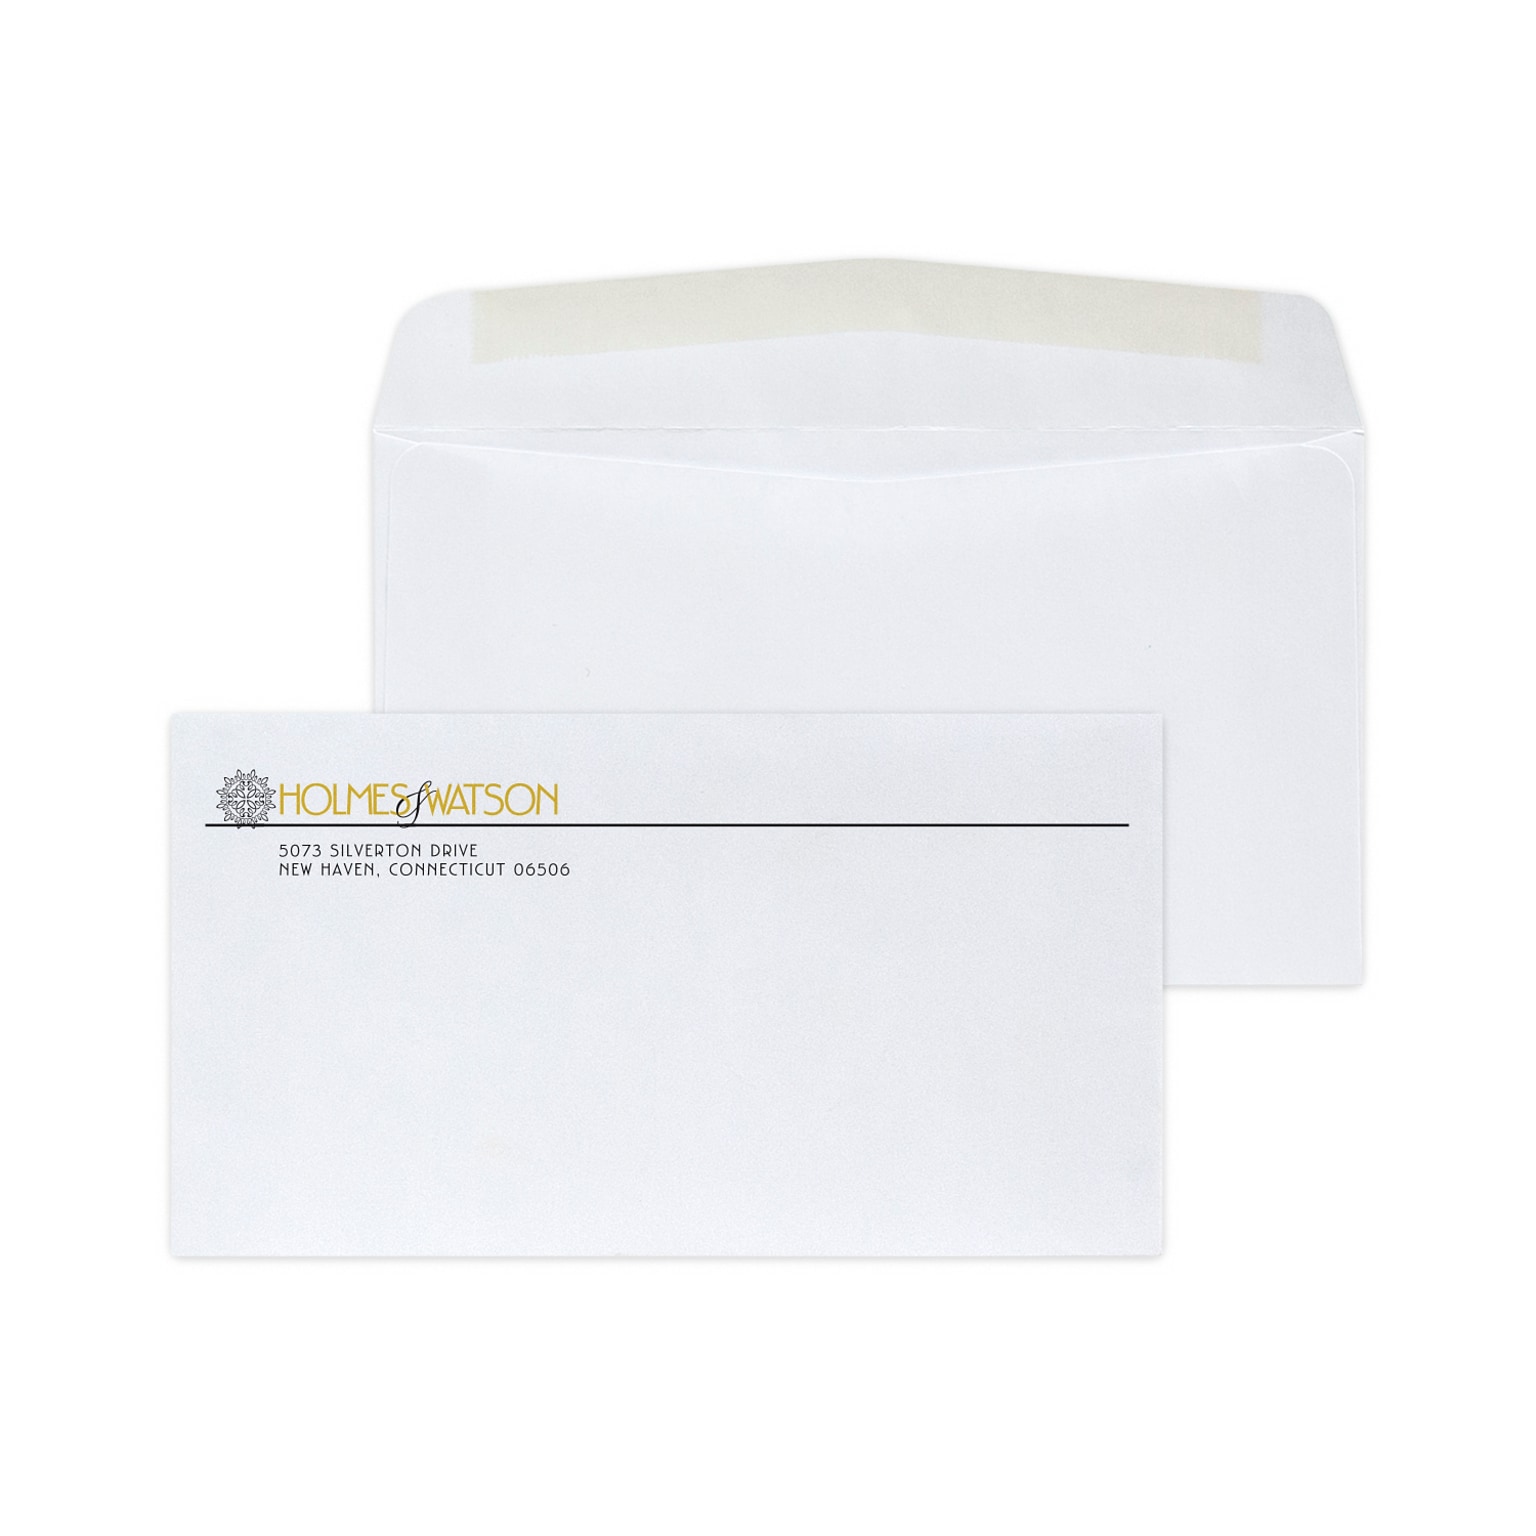 Custom #6-3/4 Standard Envelopes, 3 5/8 x 6 1/2, 24# White Wove, 1 Standard and 1 Custom Inks, 250 / Pack